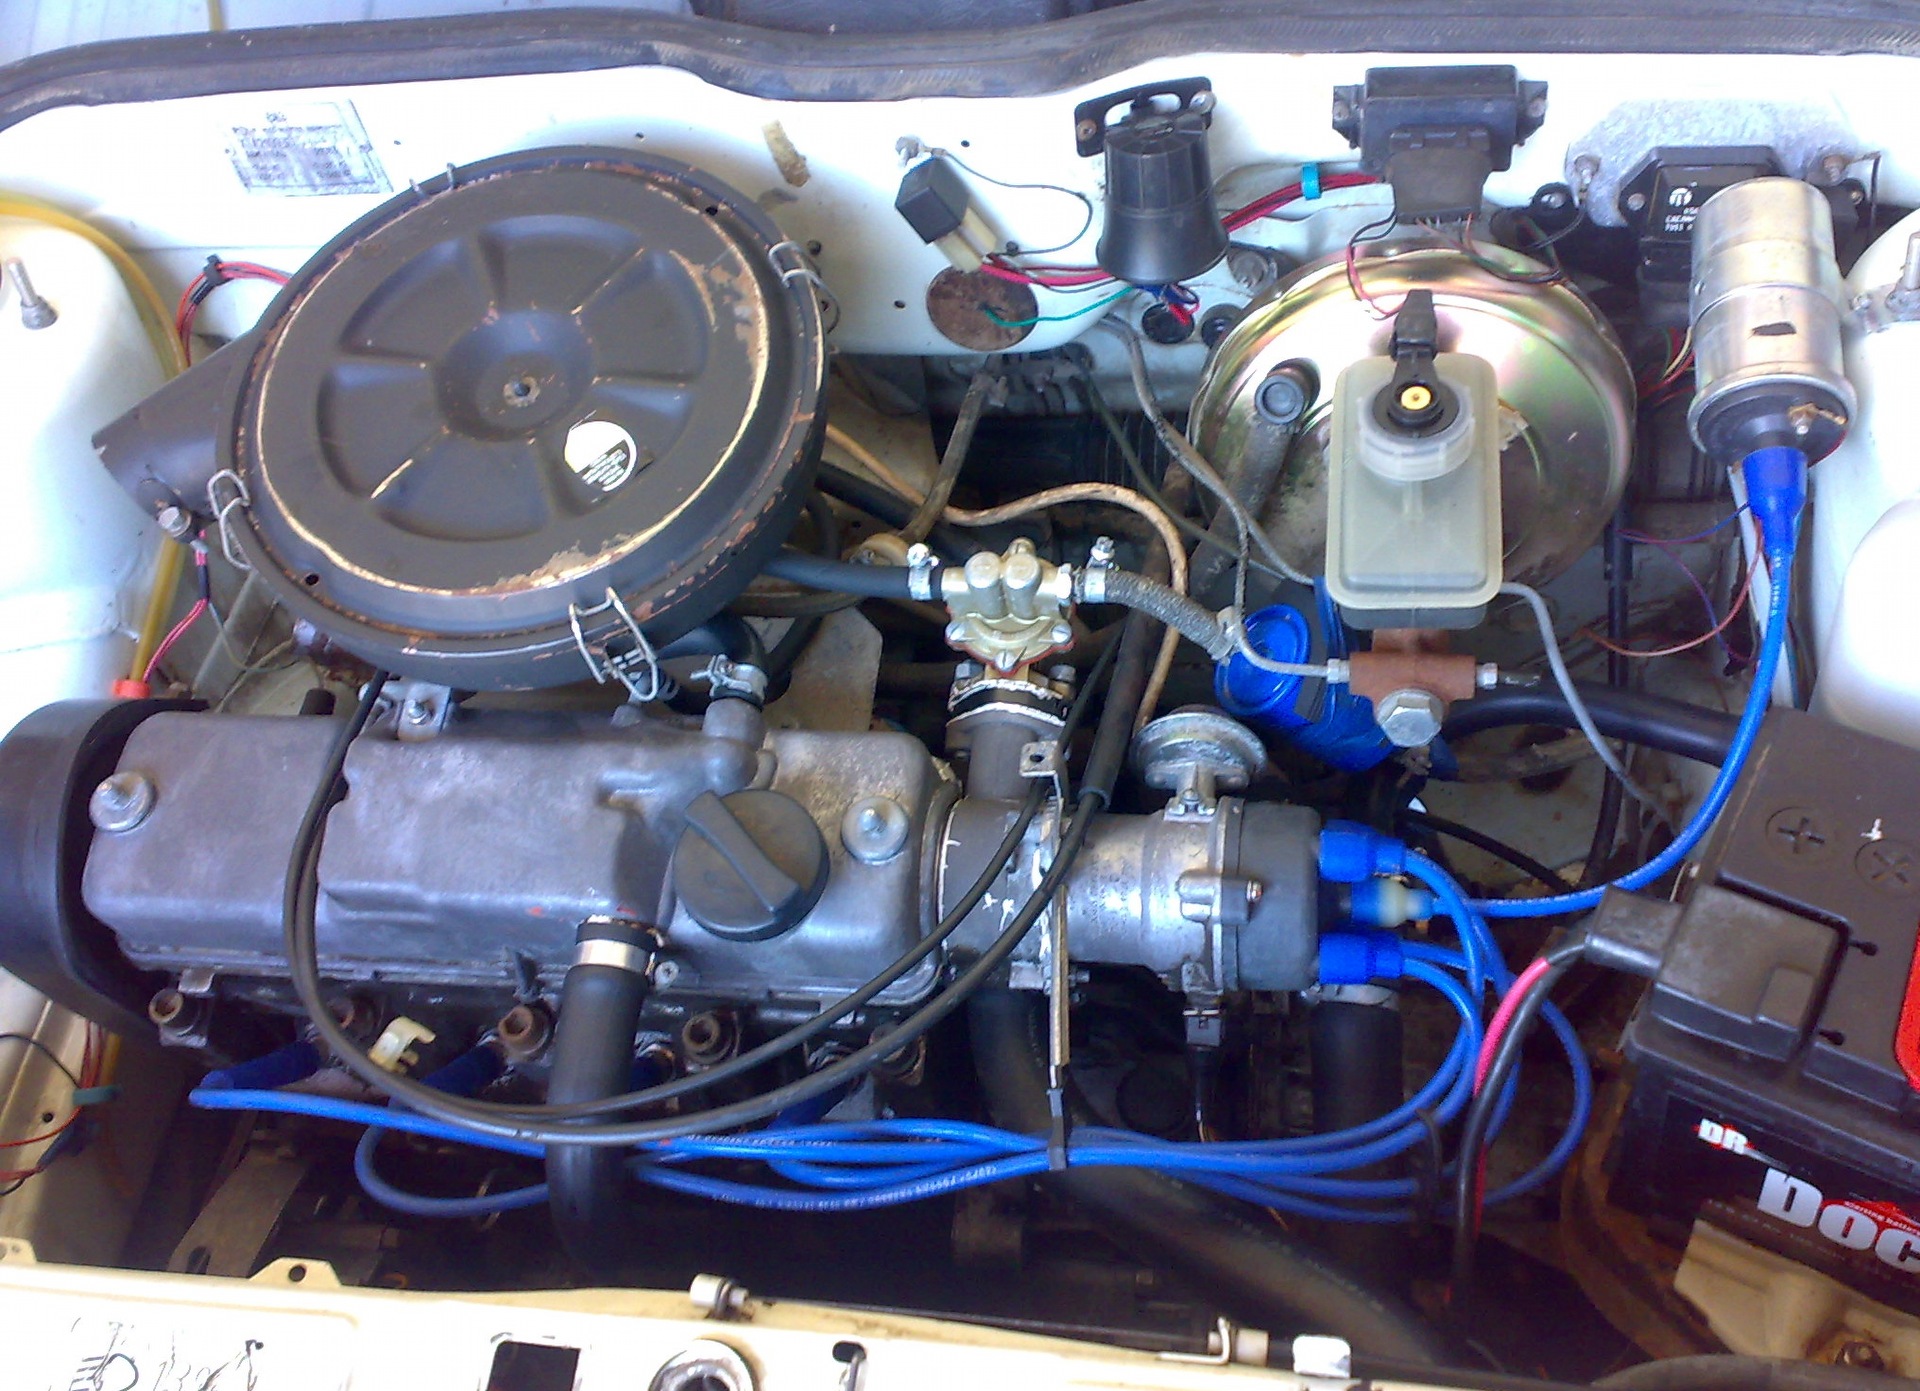 Инжекторные машины ваз. Двигатель ВАЗ 2109 карбюратор. Карбюраторный мотор ВАЗ 2109. ДВС ВАЗ 2109 карбюратор. ВАЗ 2109 карбюраторная.